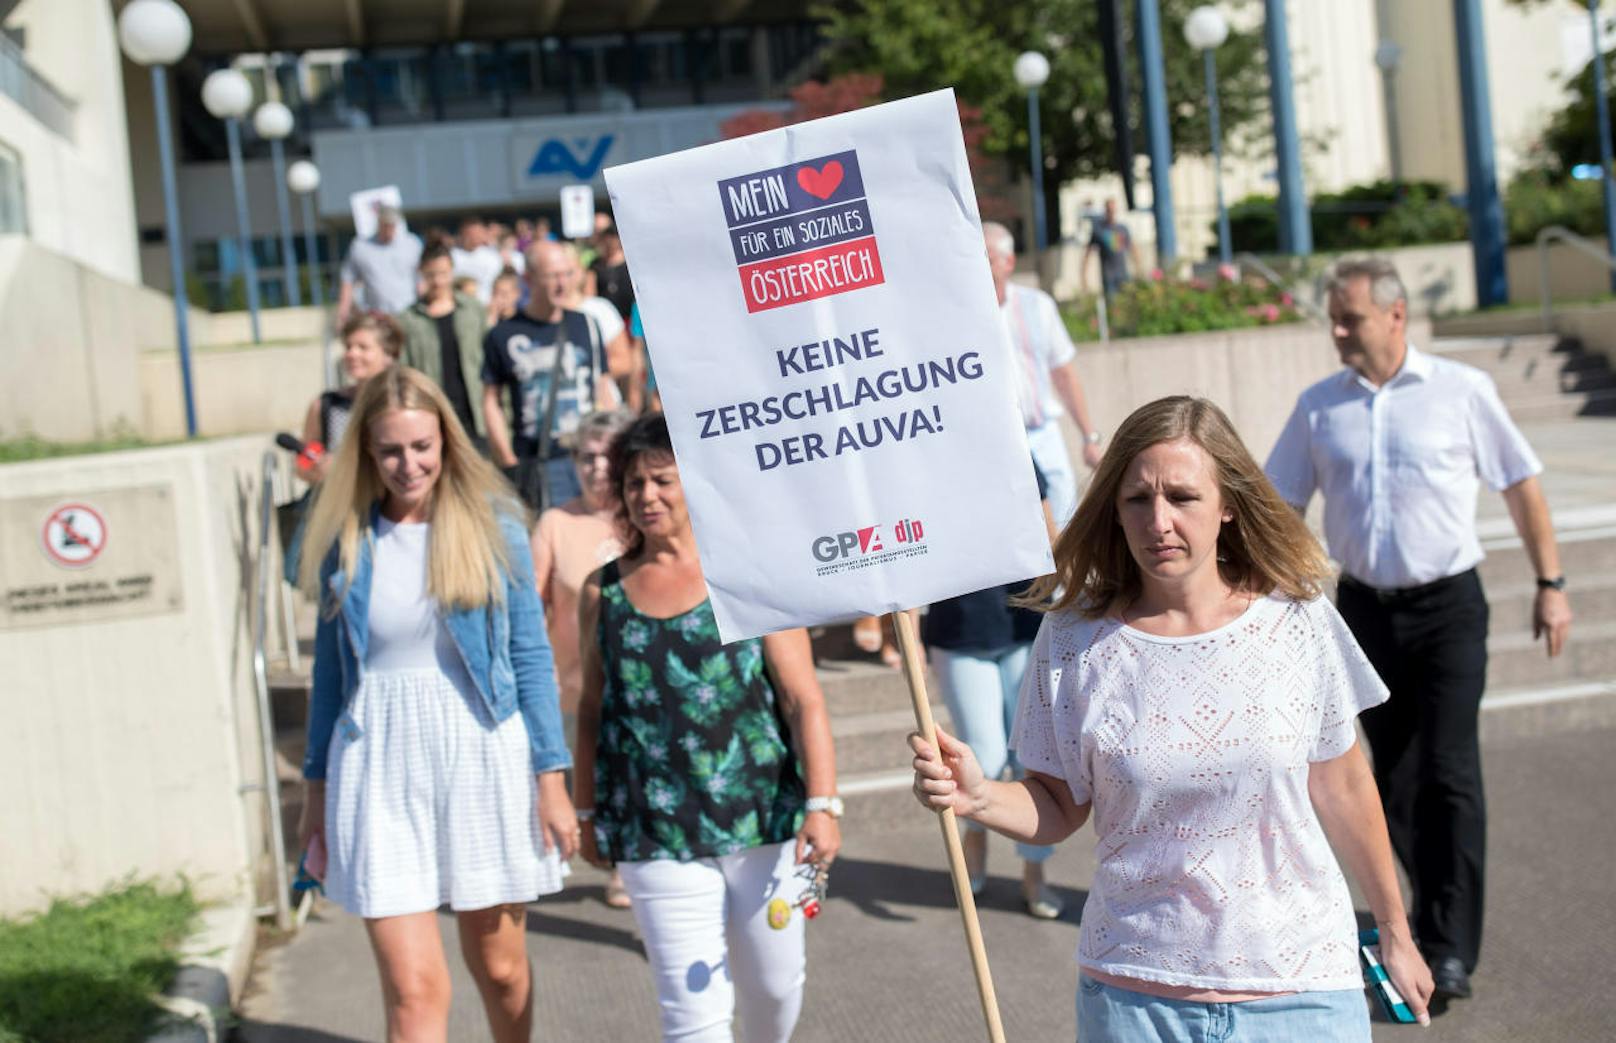 Betriebsversammlung der AUVA mit anschl. Protestaktionen gegen AUVA-Zerschlagung am Montag, 13. August 2018, in Wien.